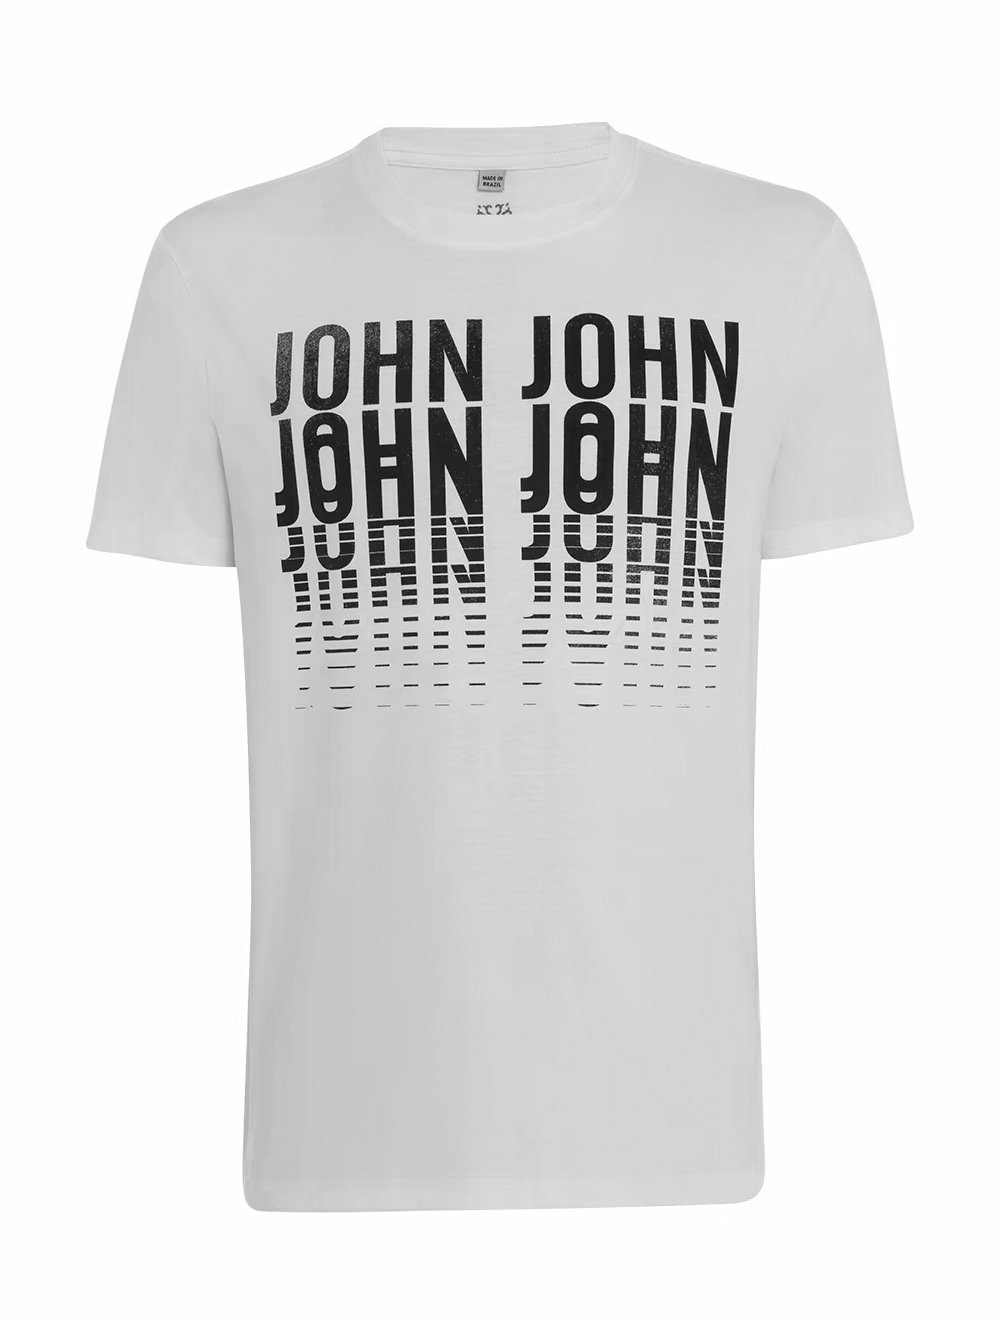 Camiseta John John Ts Rg Repeat Black